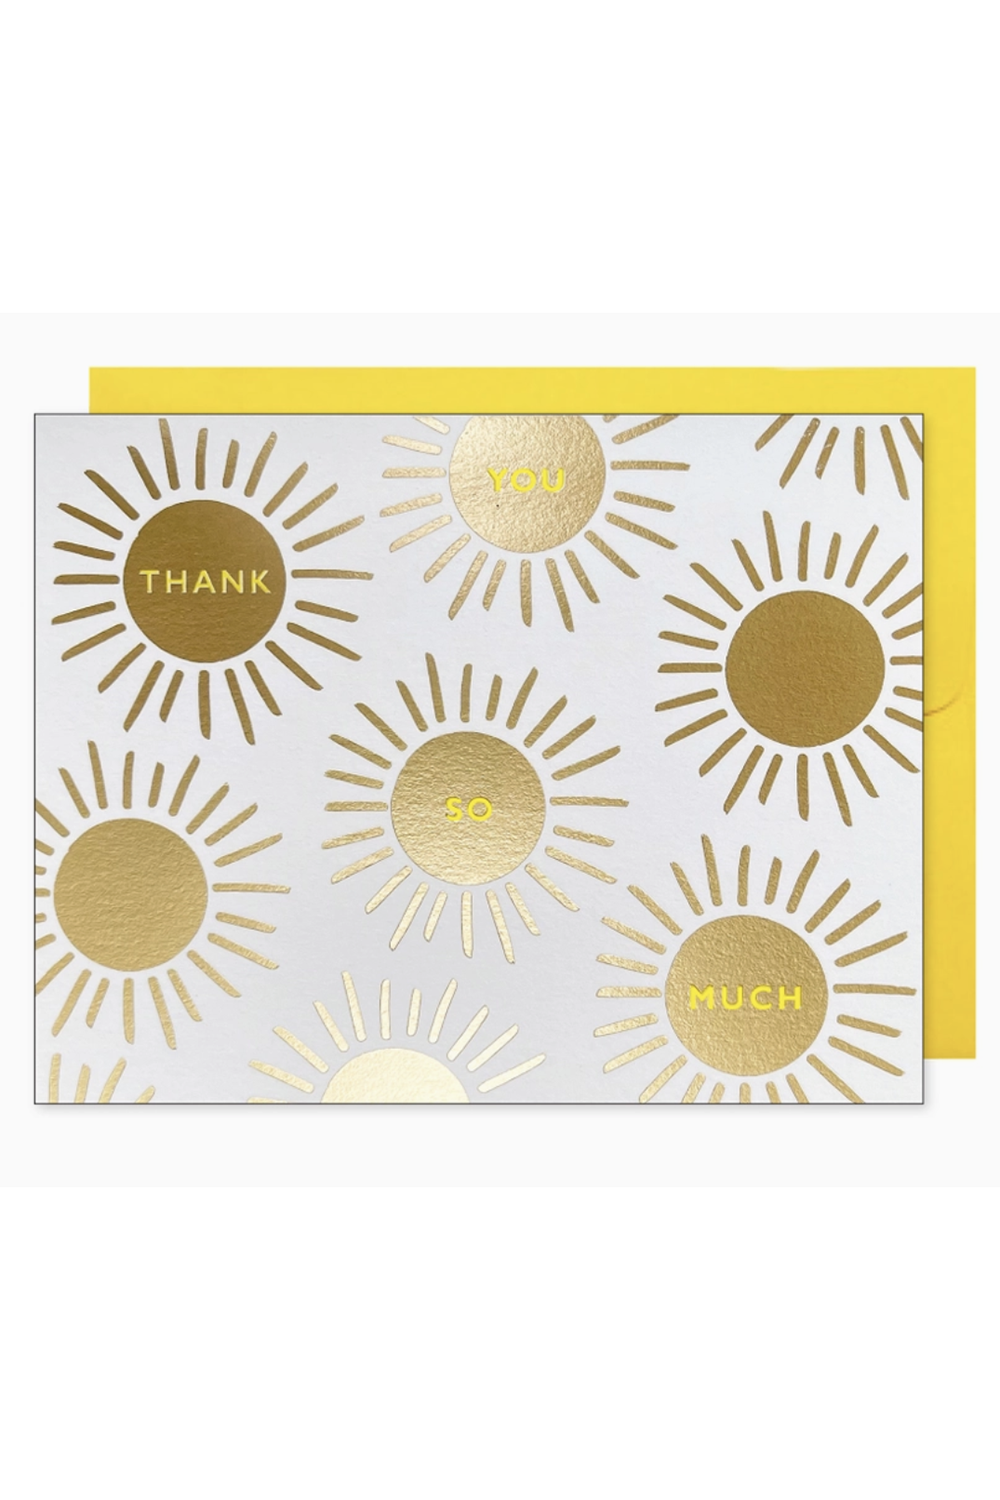 JF Thank You Boxed Card Set - Gold Sunburst